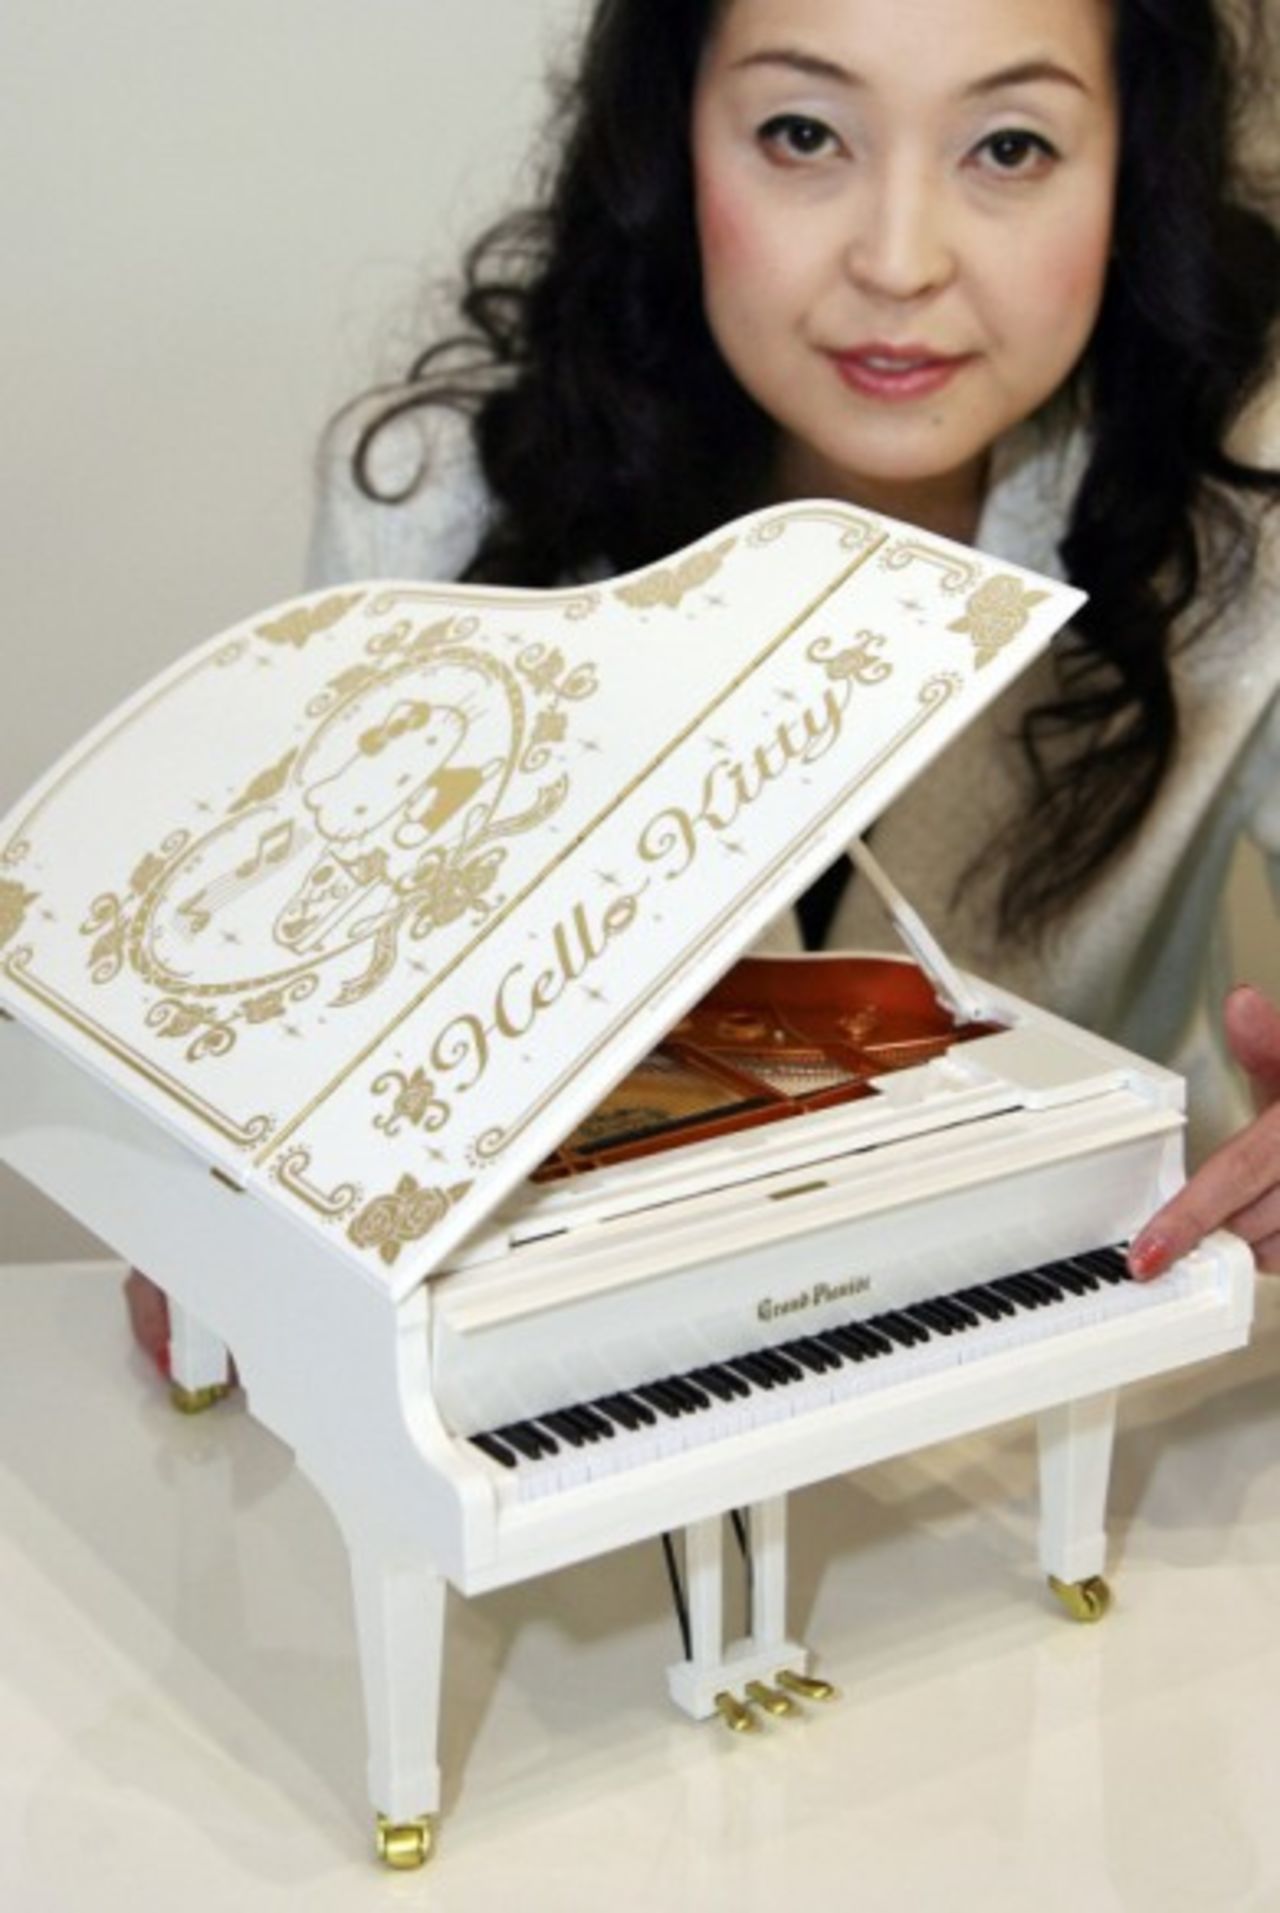 Una empleada de la empresa japonesa Sega muestra el piano de cola más pequeño del mundo versión Hello Kitty, que cuenta con 88 teclas que funcionan y puede tocar automáticamente 115 canciones ya instaladas.